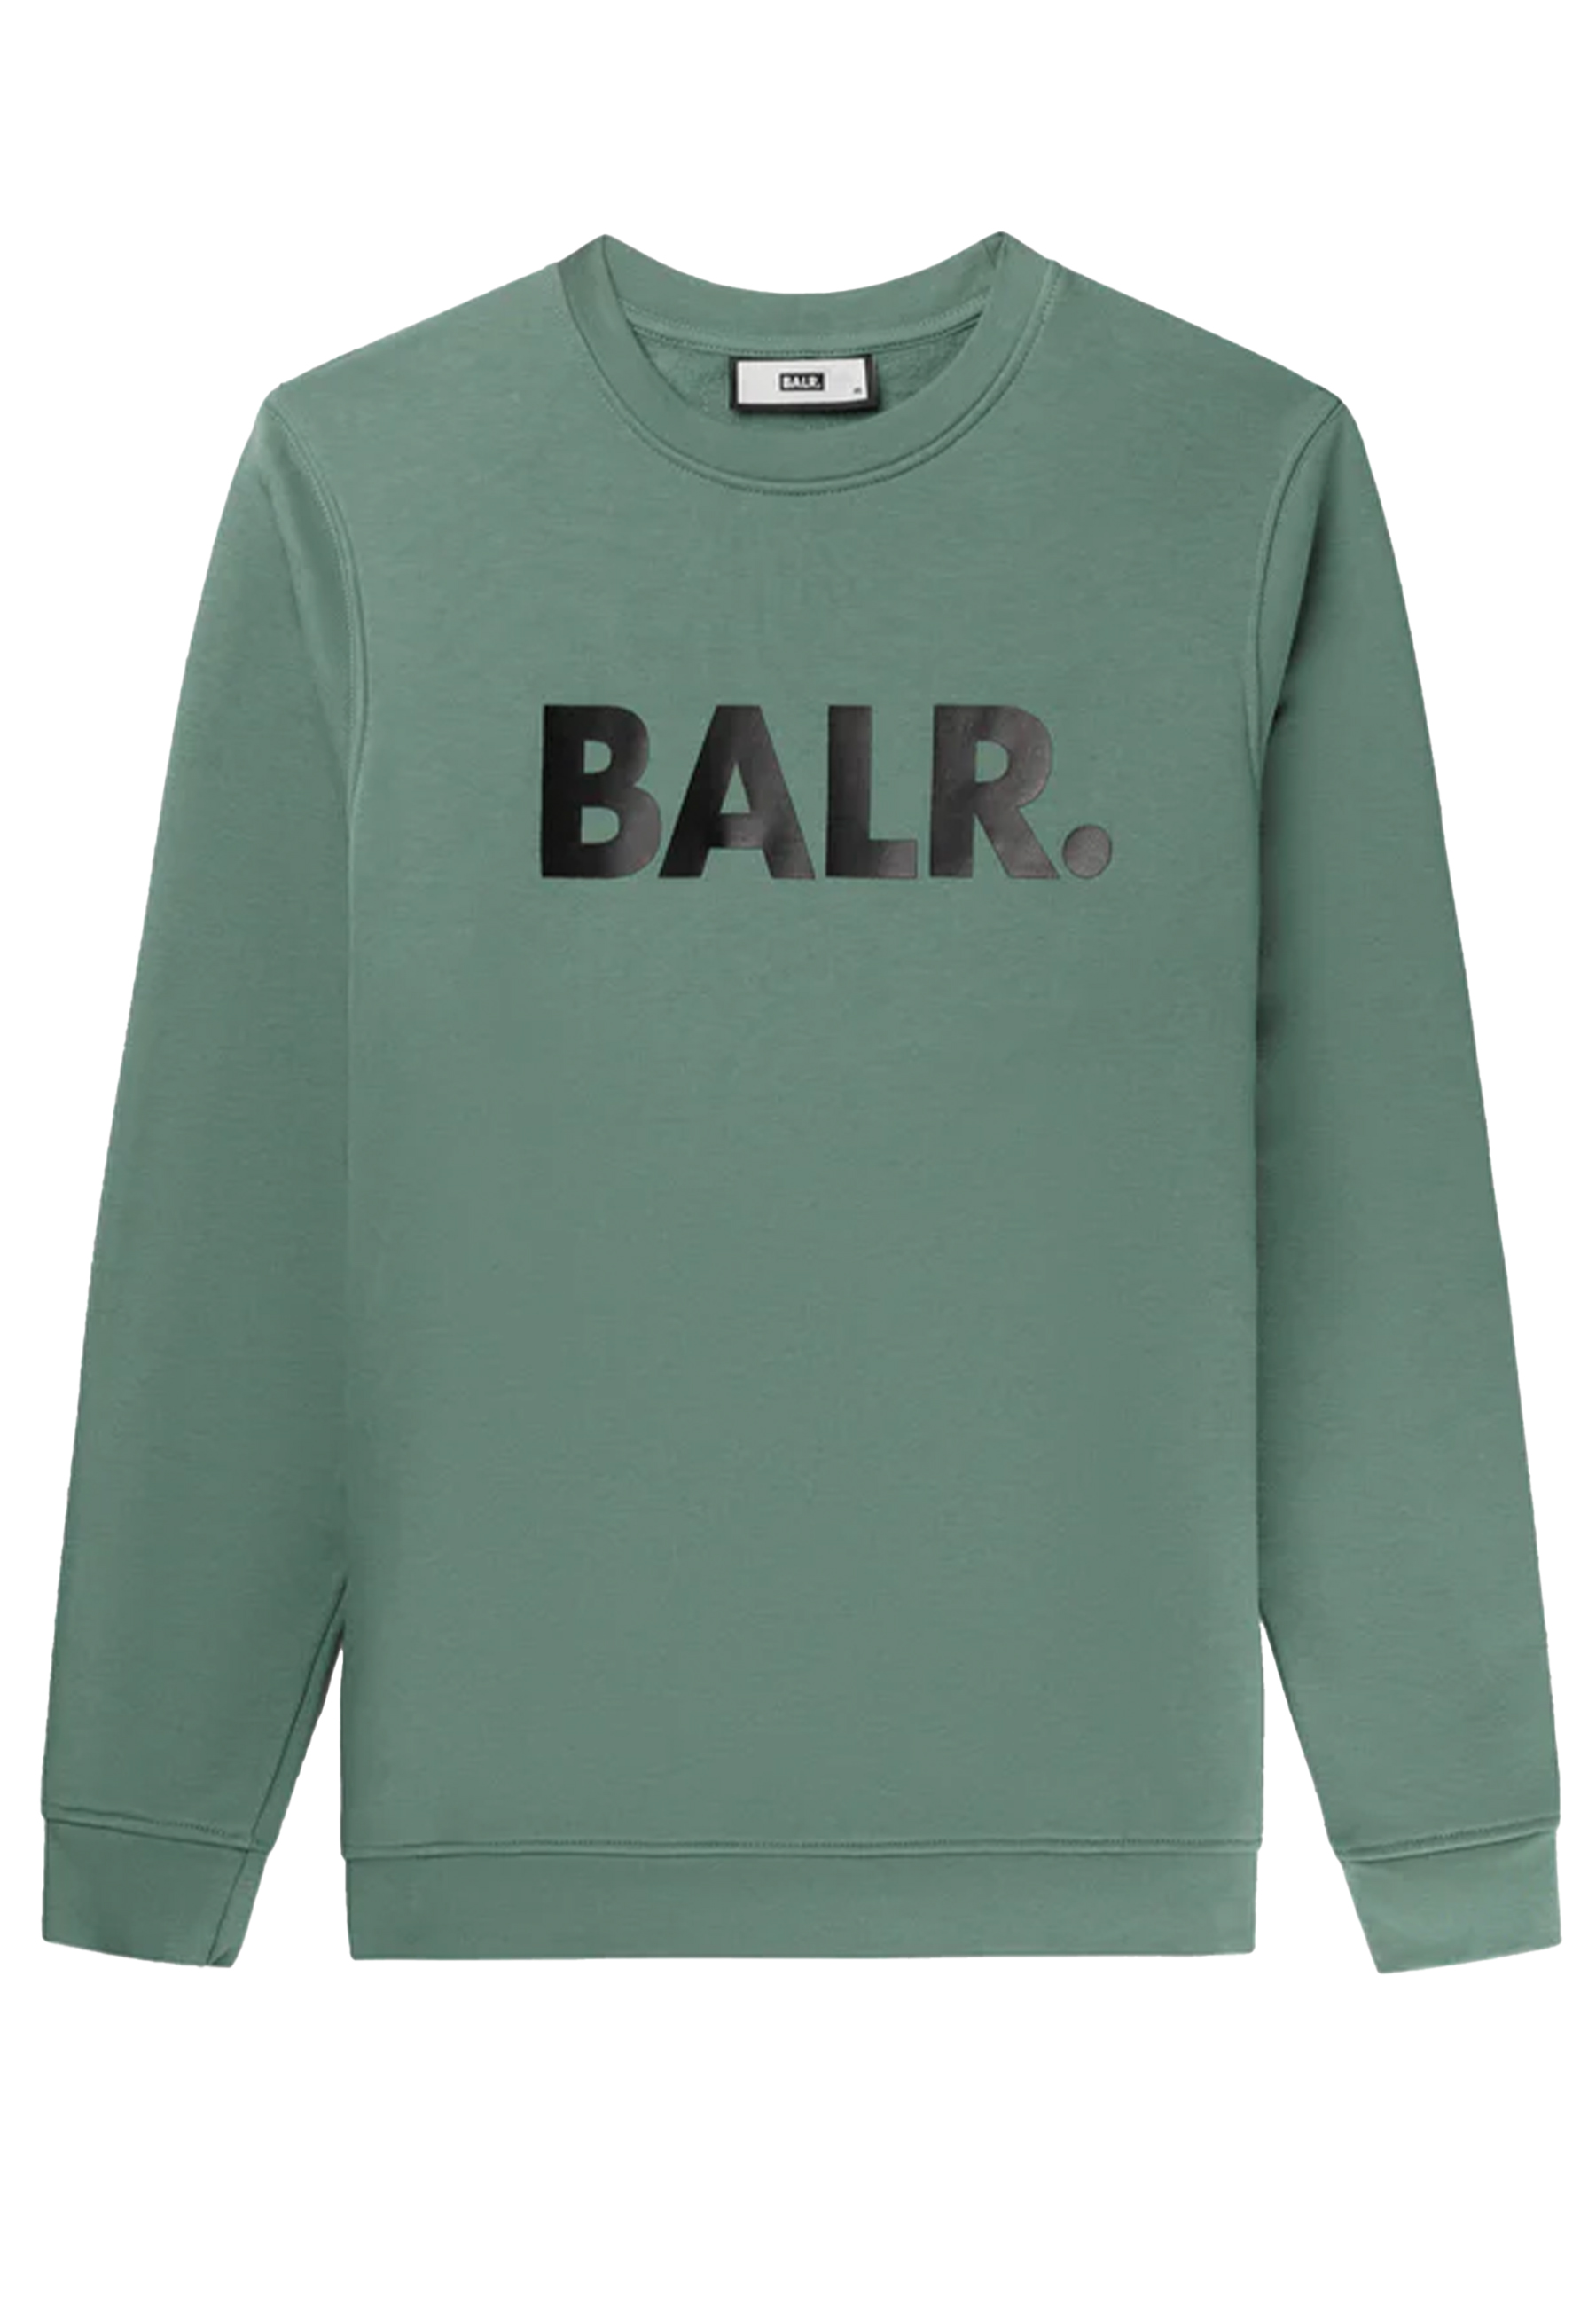 BALR. sweaters groen Heren maat S